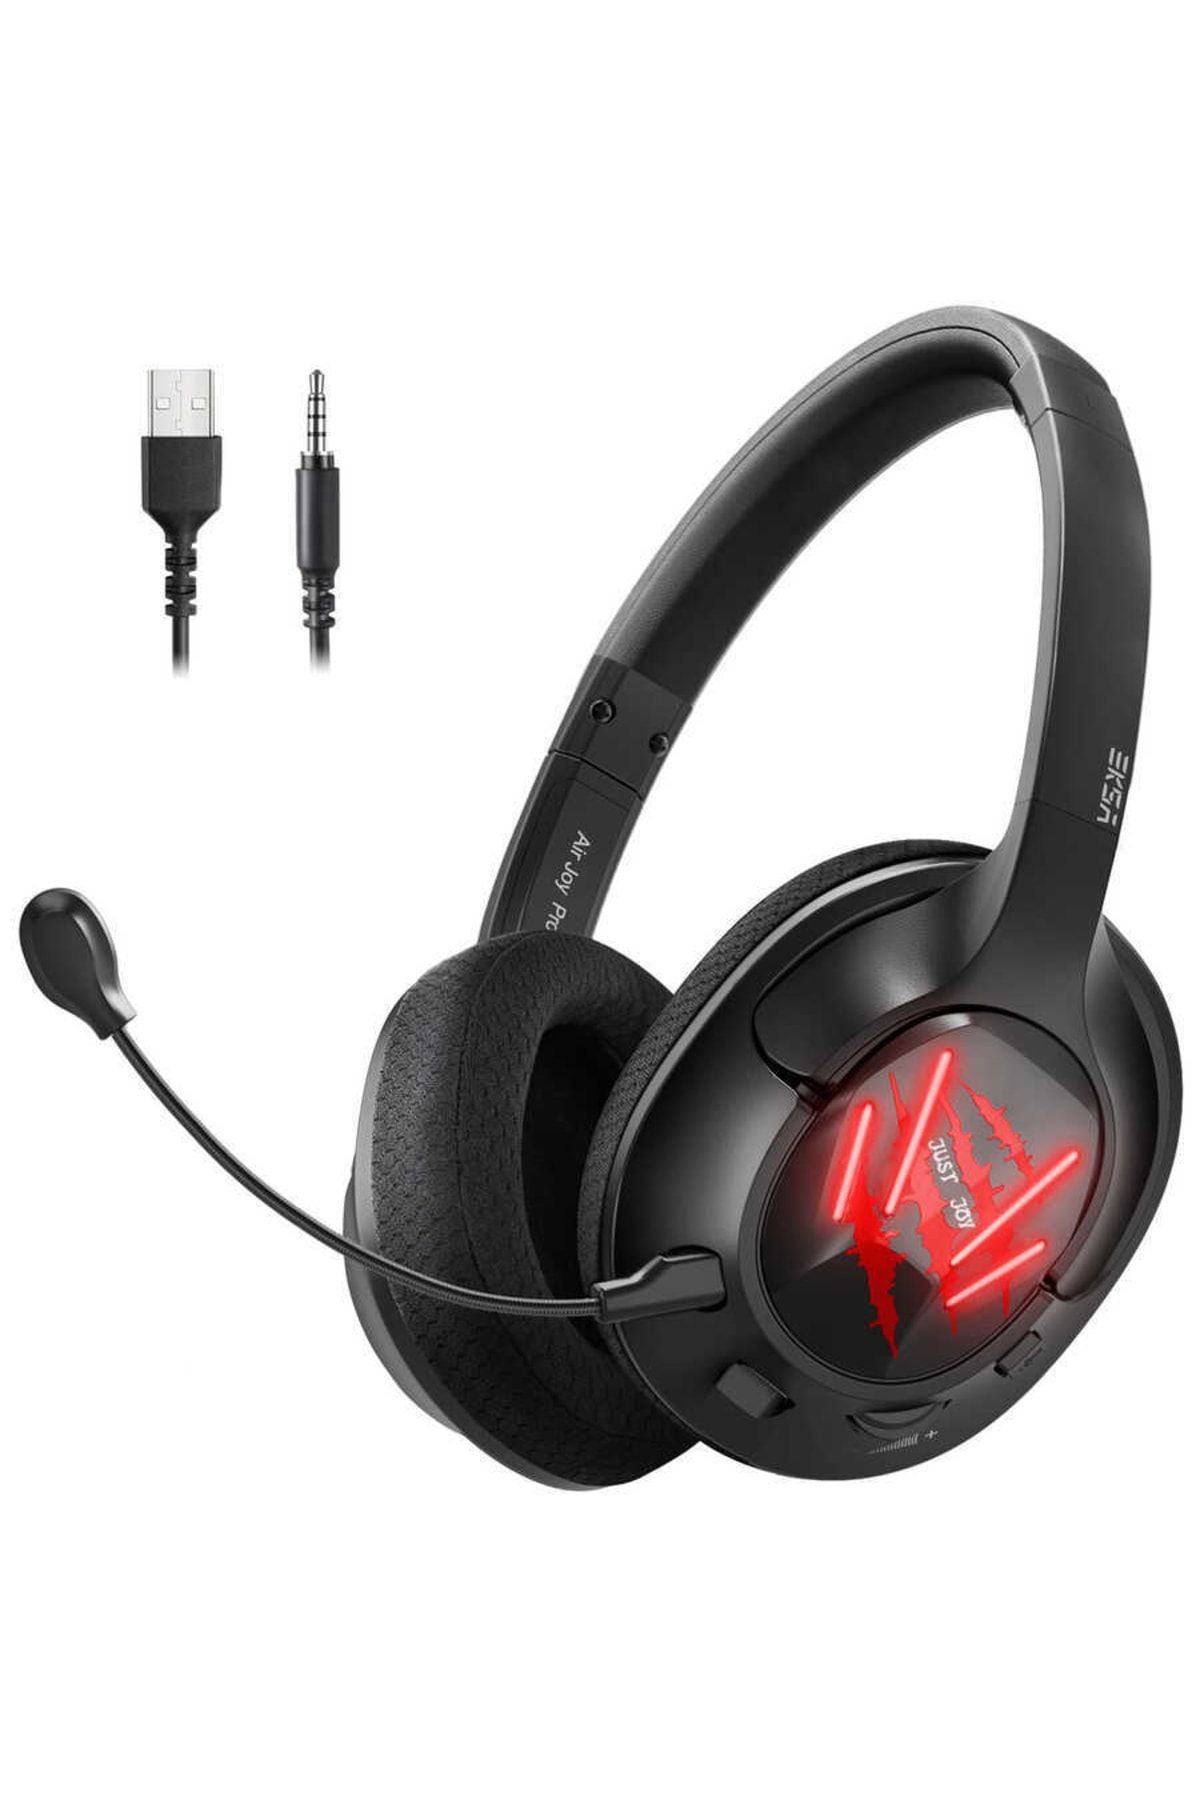 Eksa Airjoy Pro Gaming Kulaklık Oyuncu Kulaklığı 7.1 Surround 3.5 Mm & Usb & Çıkarılabilir Mikrofon